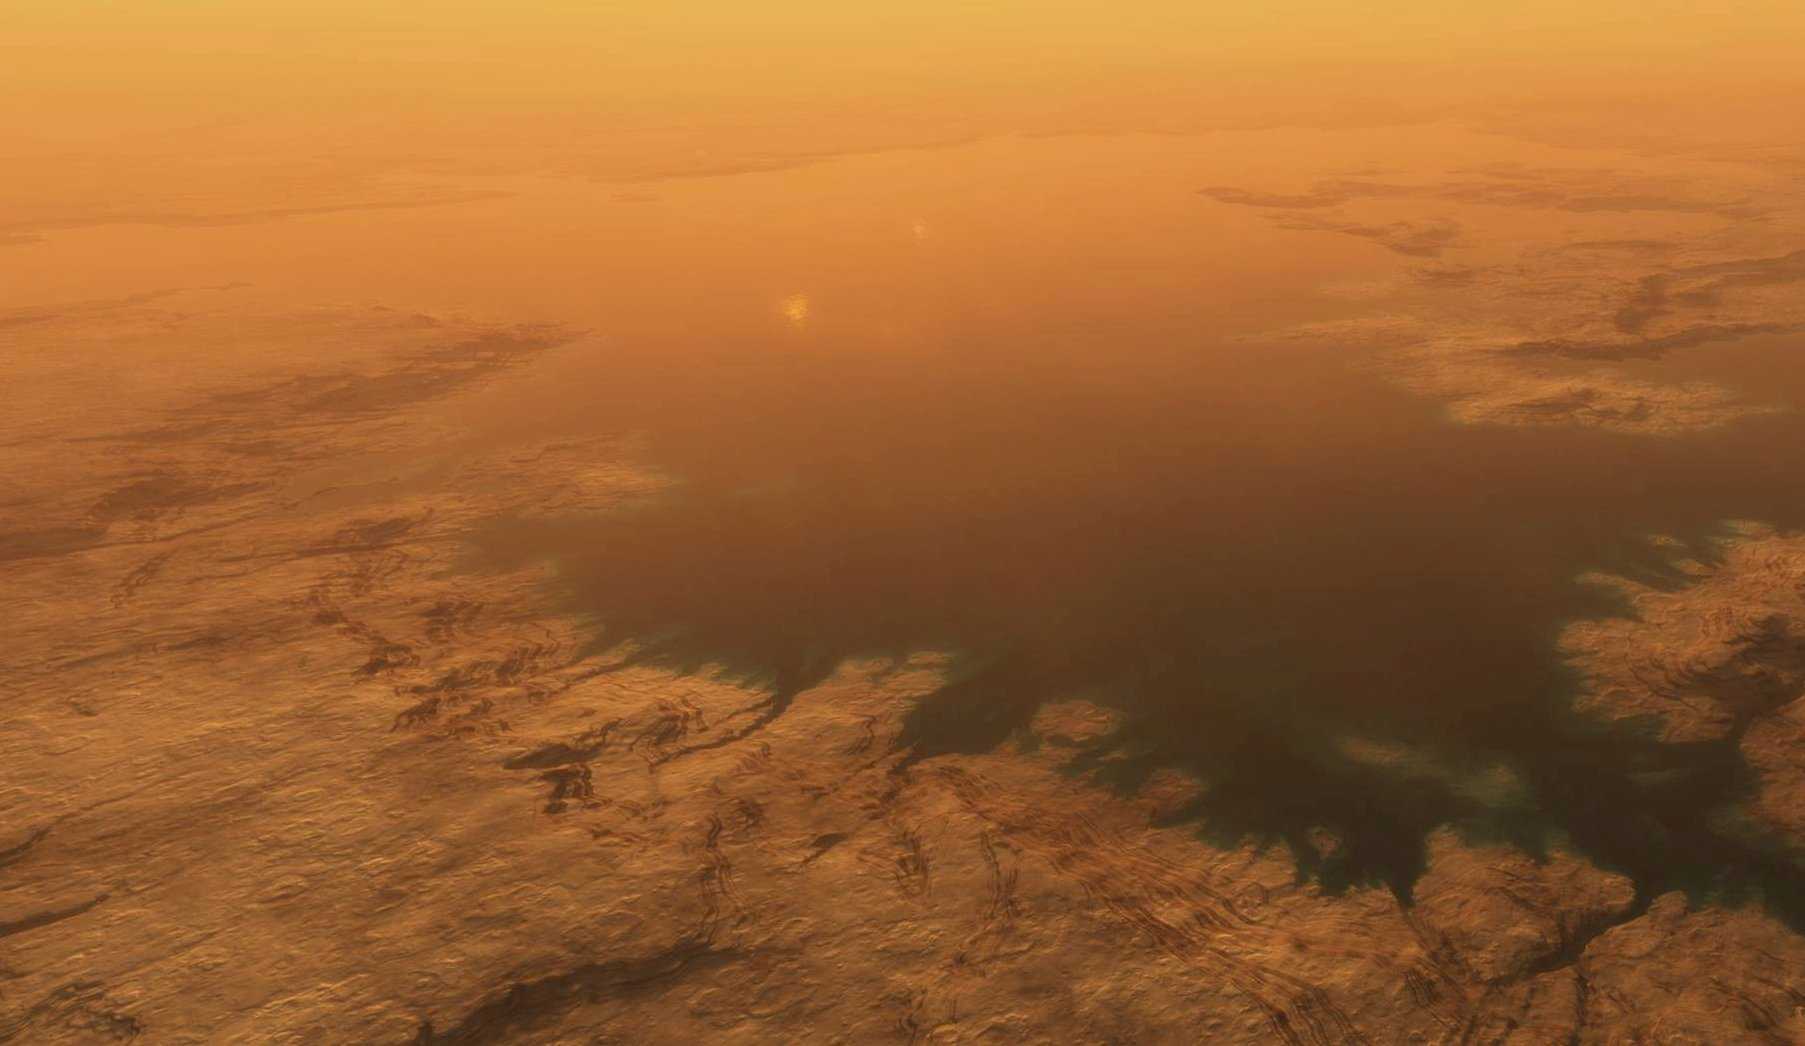 Глобальный океан Титана оказался таким же соленым, как земной